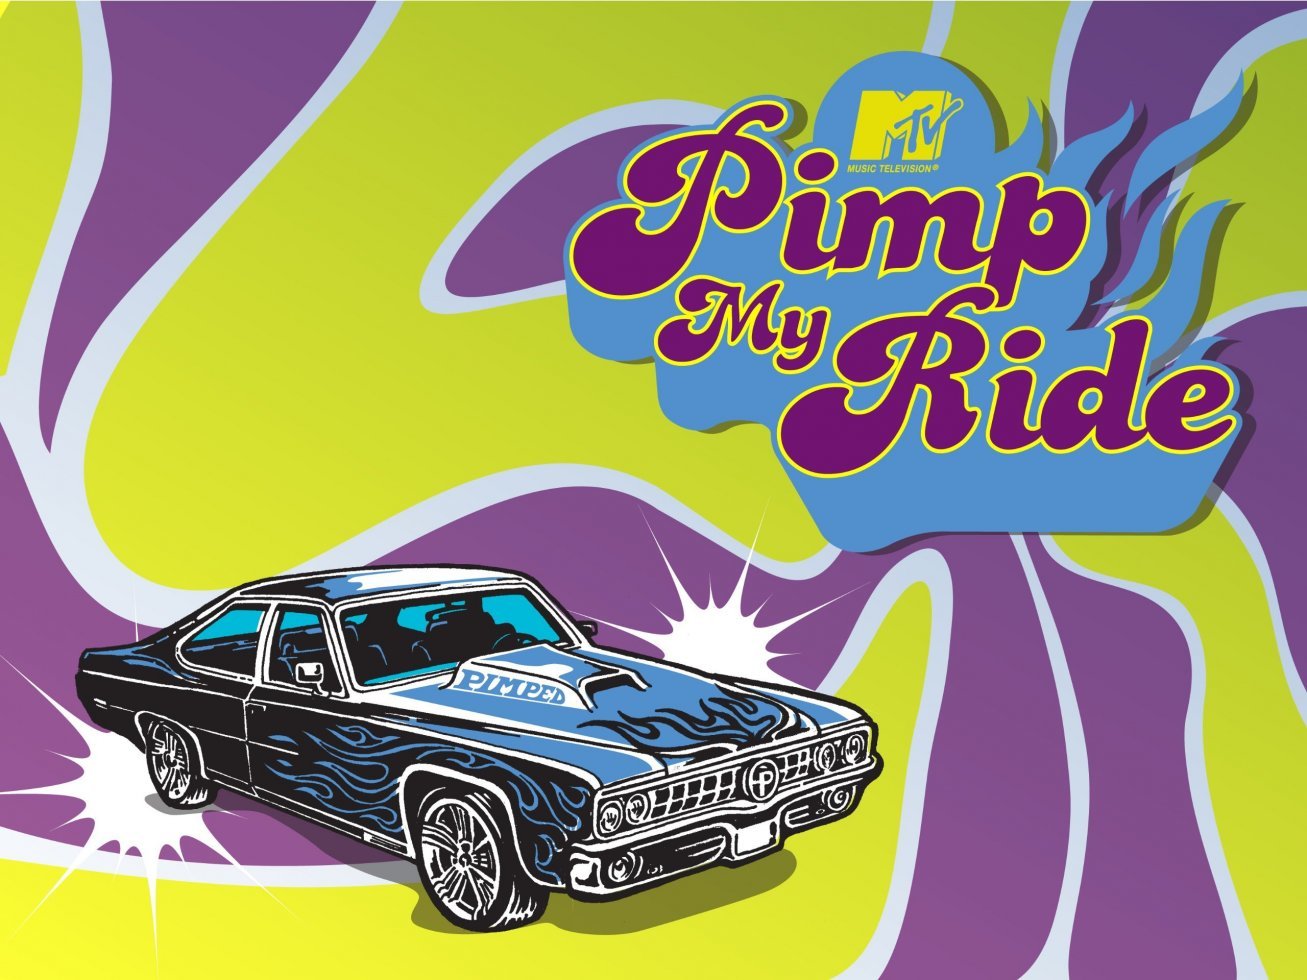 MTV programmet - Pimp My Ride - var i virkeligheden snyd og bedrag 